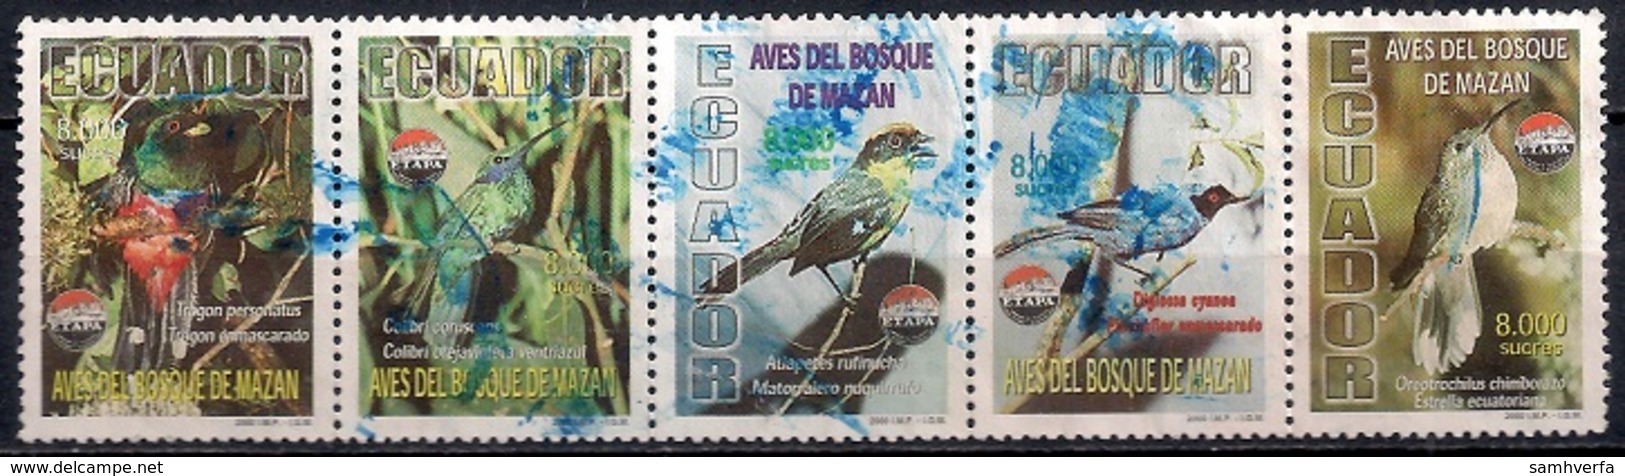 Ecuador 2000 - Birds Of Mazan - Ecuador